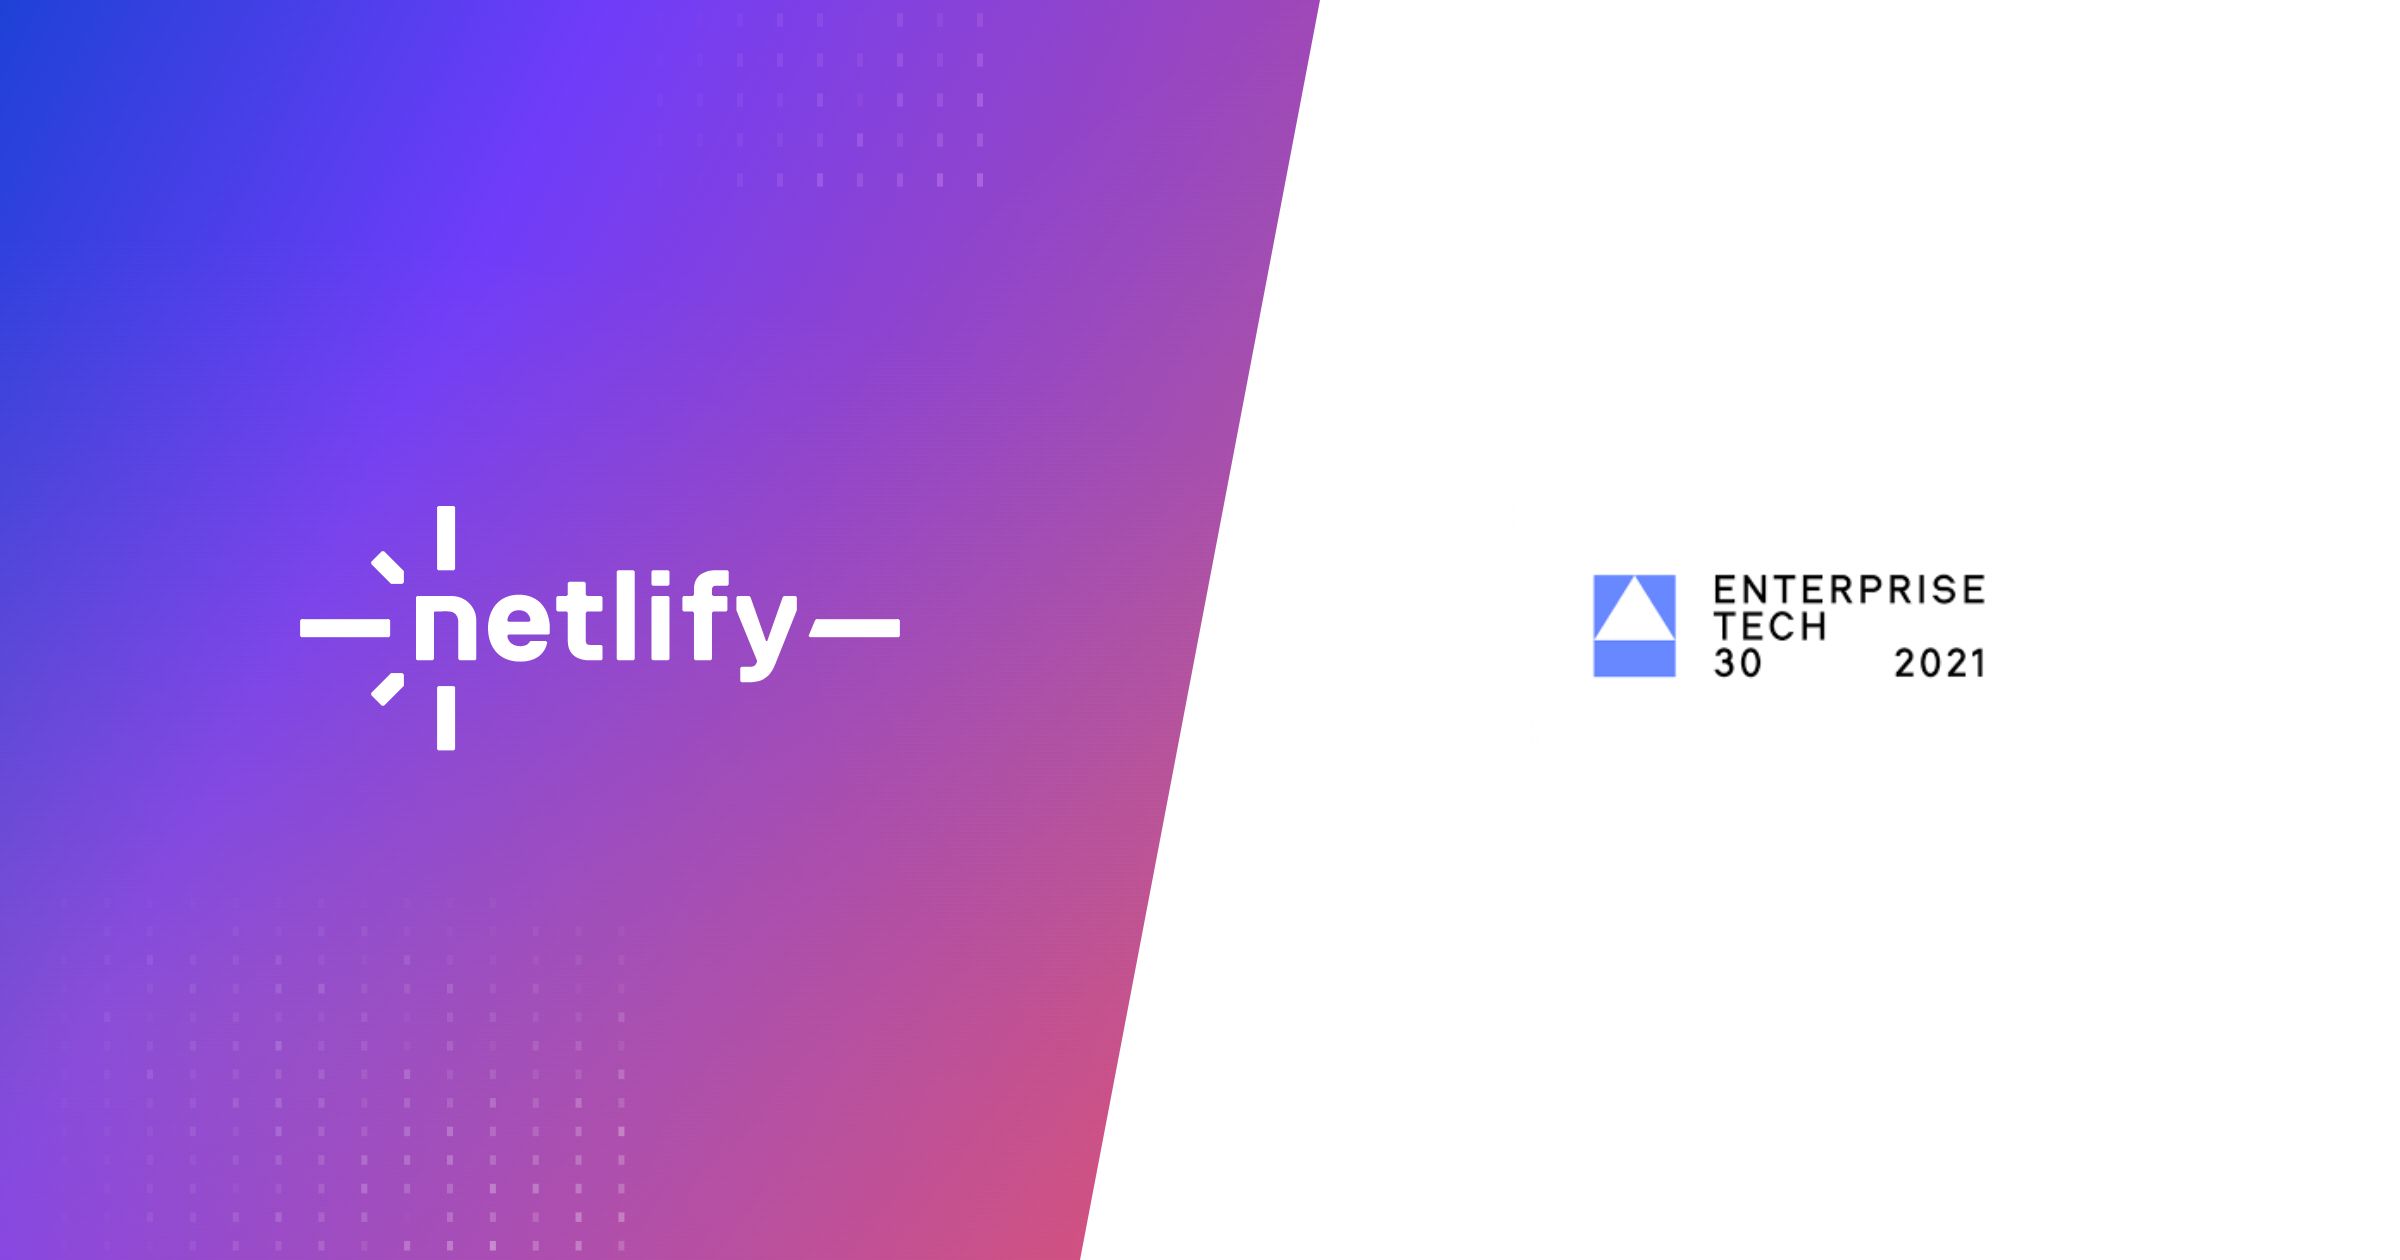 Enterprise Tech 30 and Netlify logos